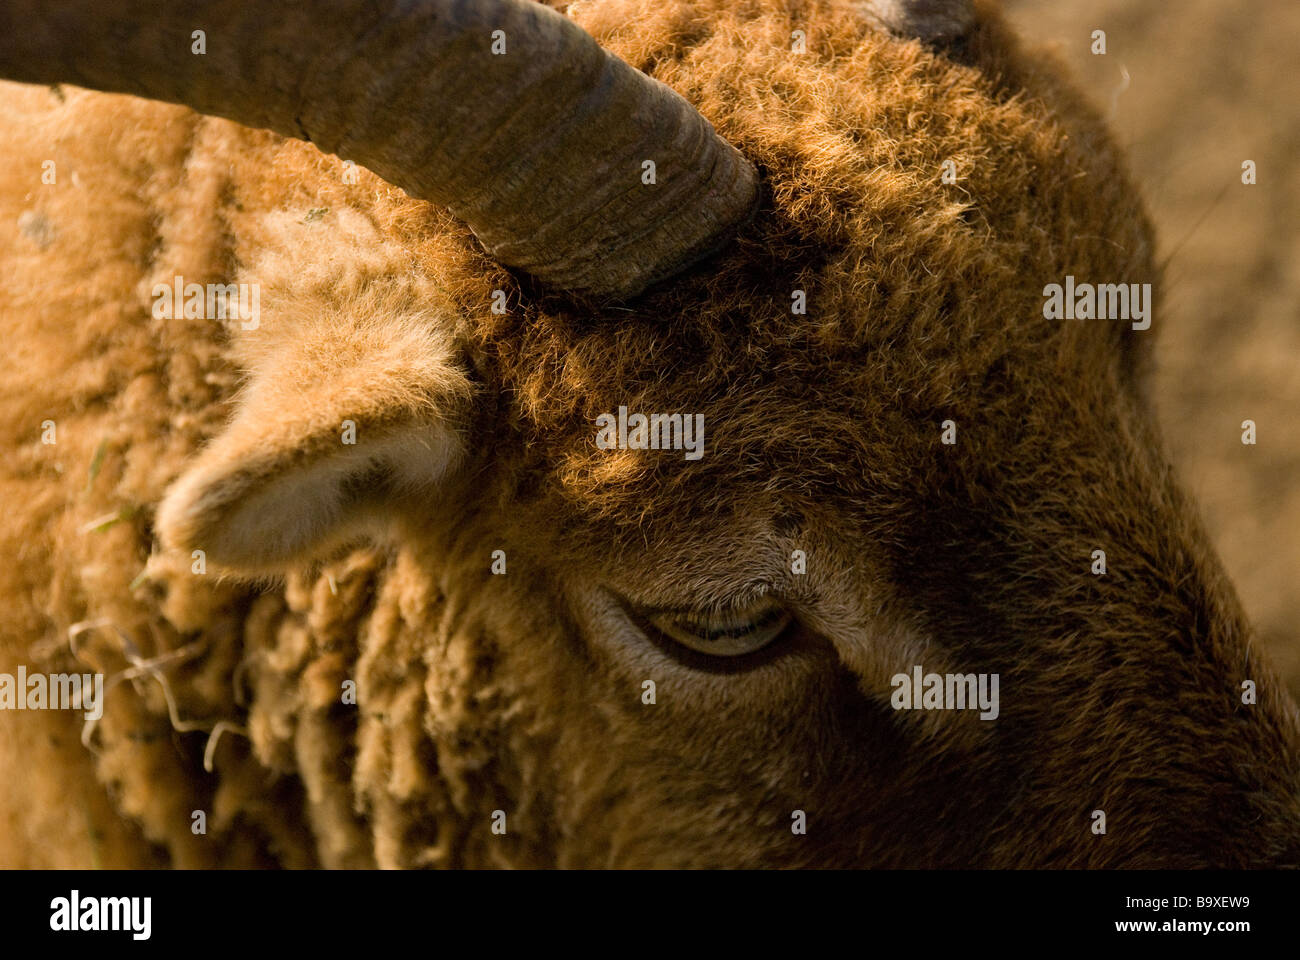 RAM-Ziege-Schaf-Farm in der Nähe Horn Auge Pelz Mantel wolle warm braun Ohr Wales Sonne Stockfoto